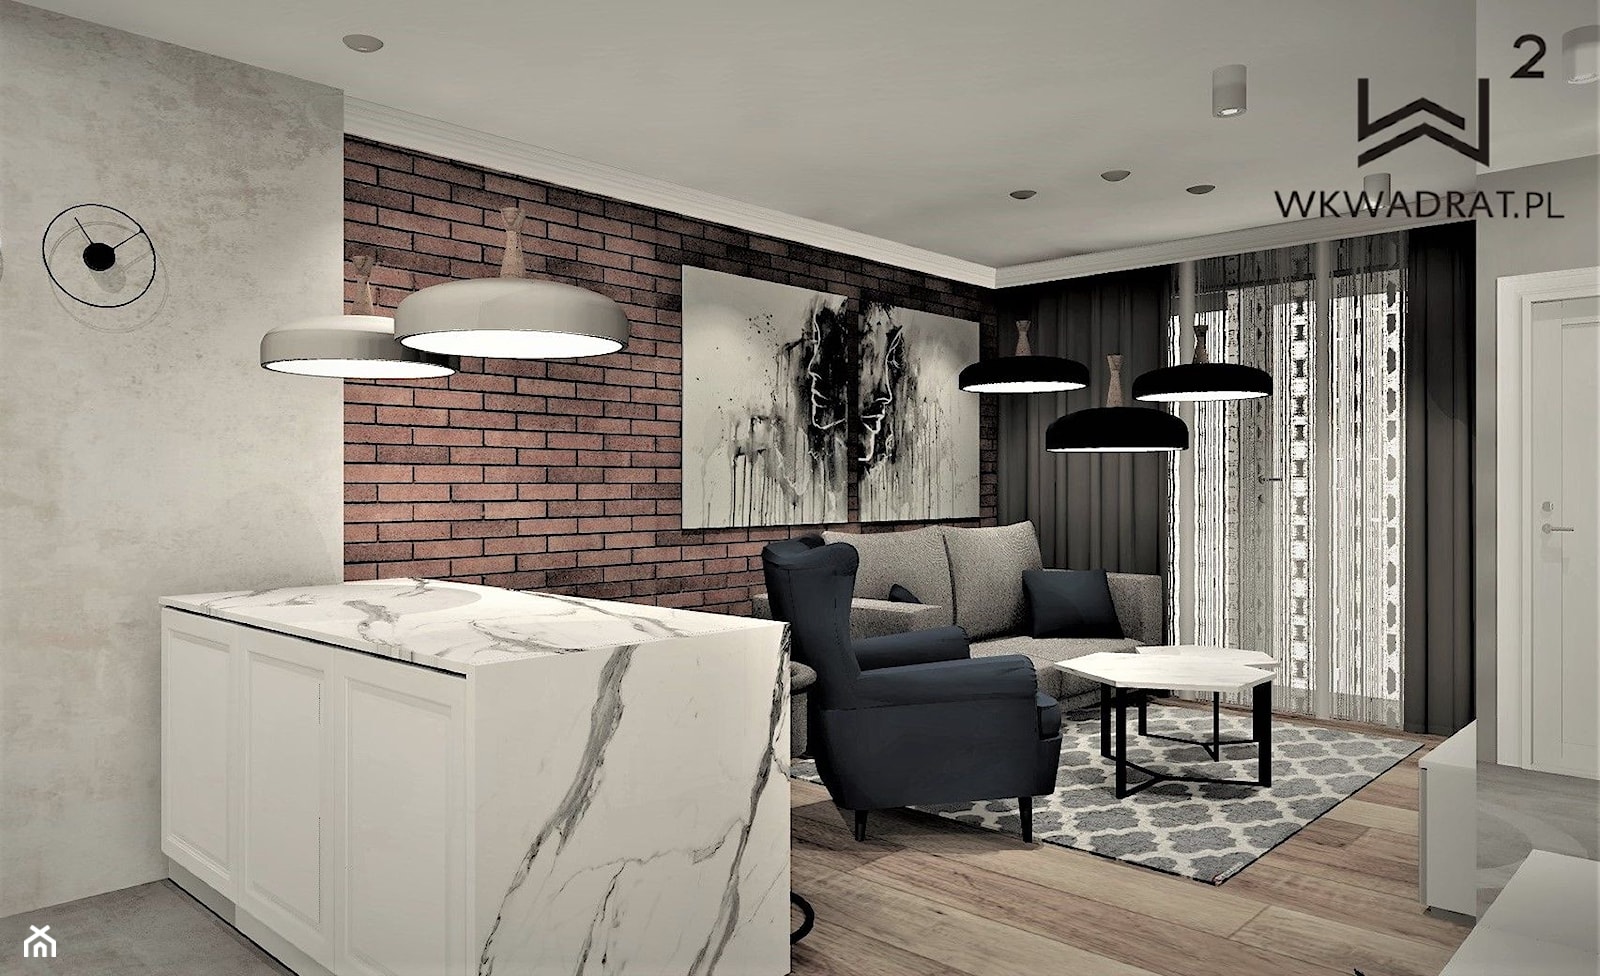 Apartament na wynajem w Kołobrzegu 2 - Mały brązowy szary salon z kuchnią, styl rustykalny - zdjęcie od WKWADRAT - PRACOWNIA ARANŻACJI WNĘTRZ - Homebook